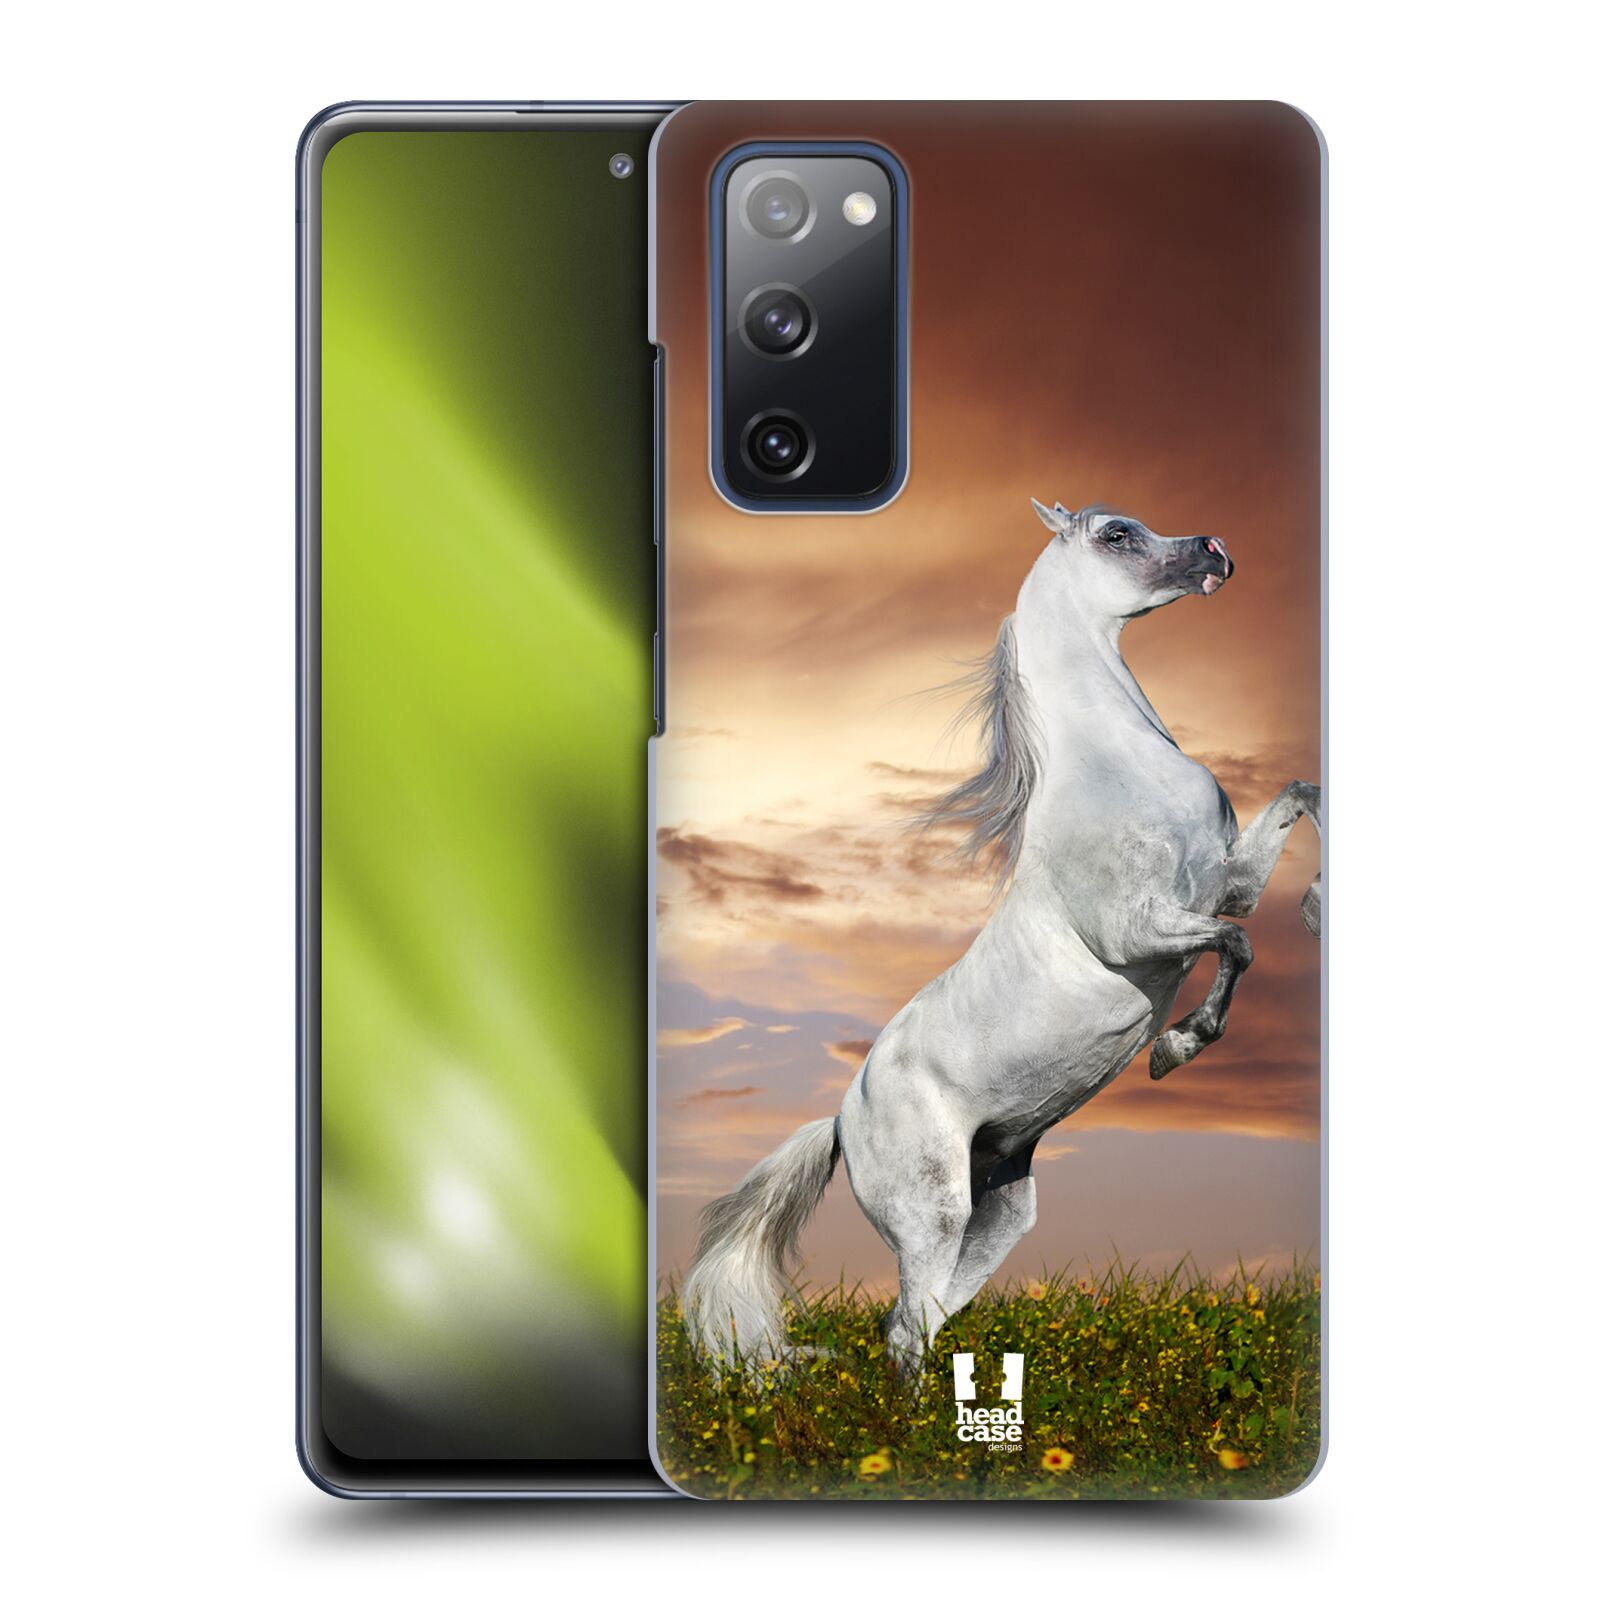 Zadní obal pro mobil Samsung Galaxy S20 FE / S20 FE 5G - HEAD CASE - Svět zvířat divoký kůň